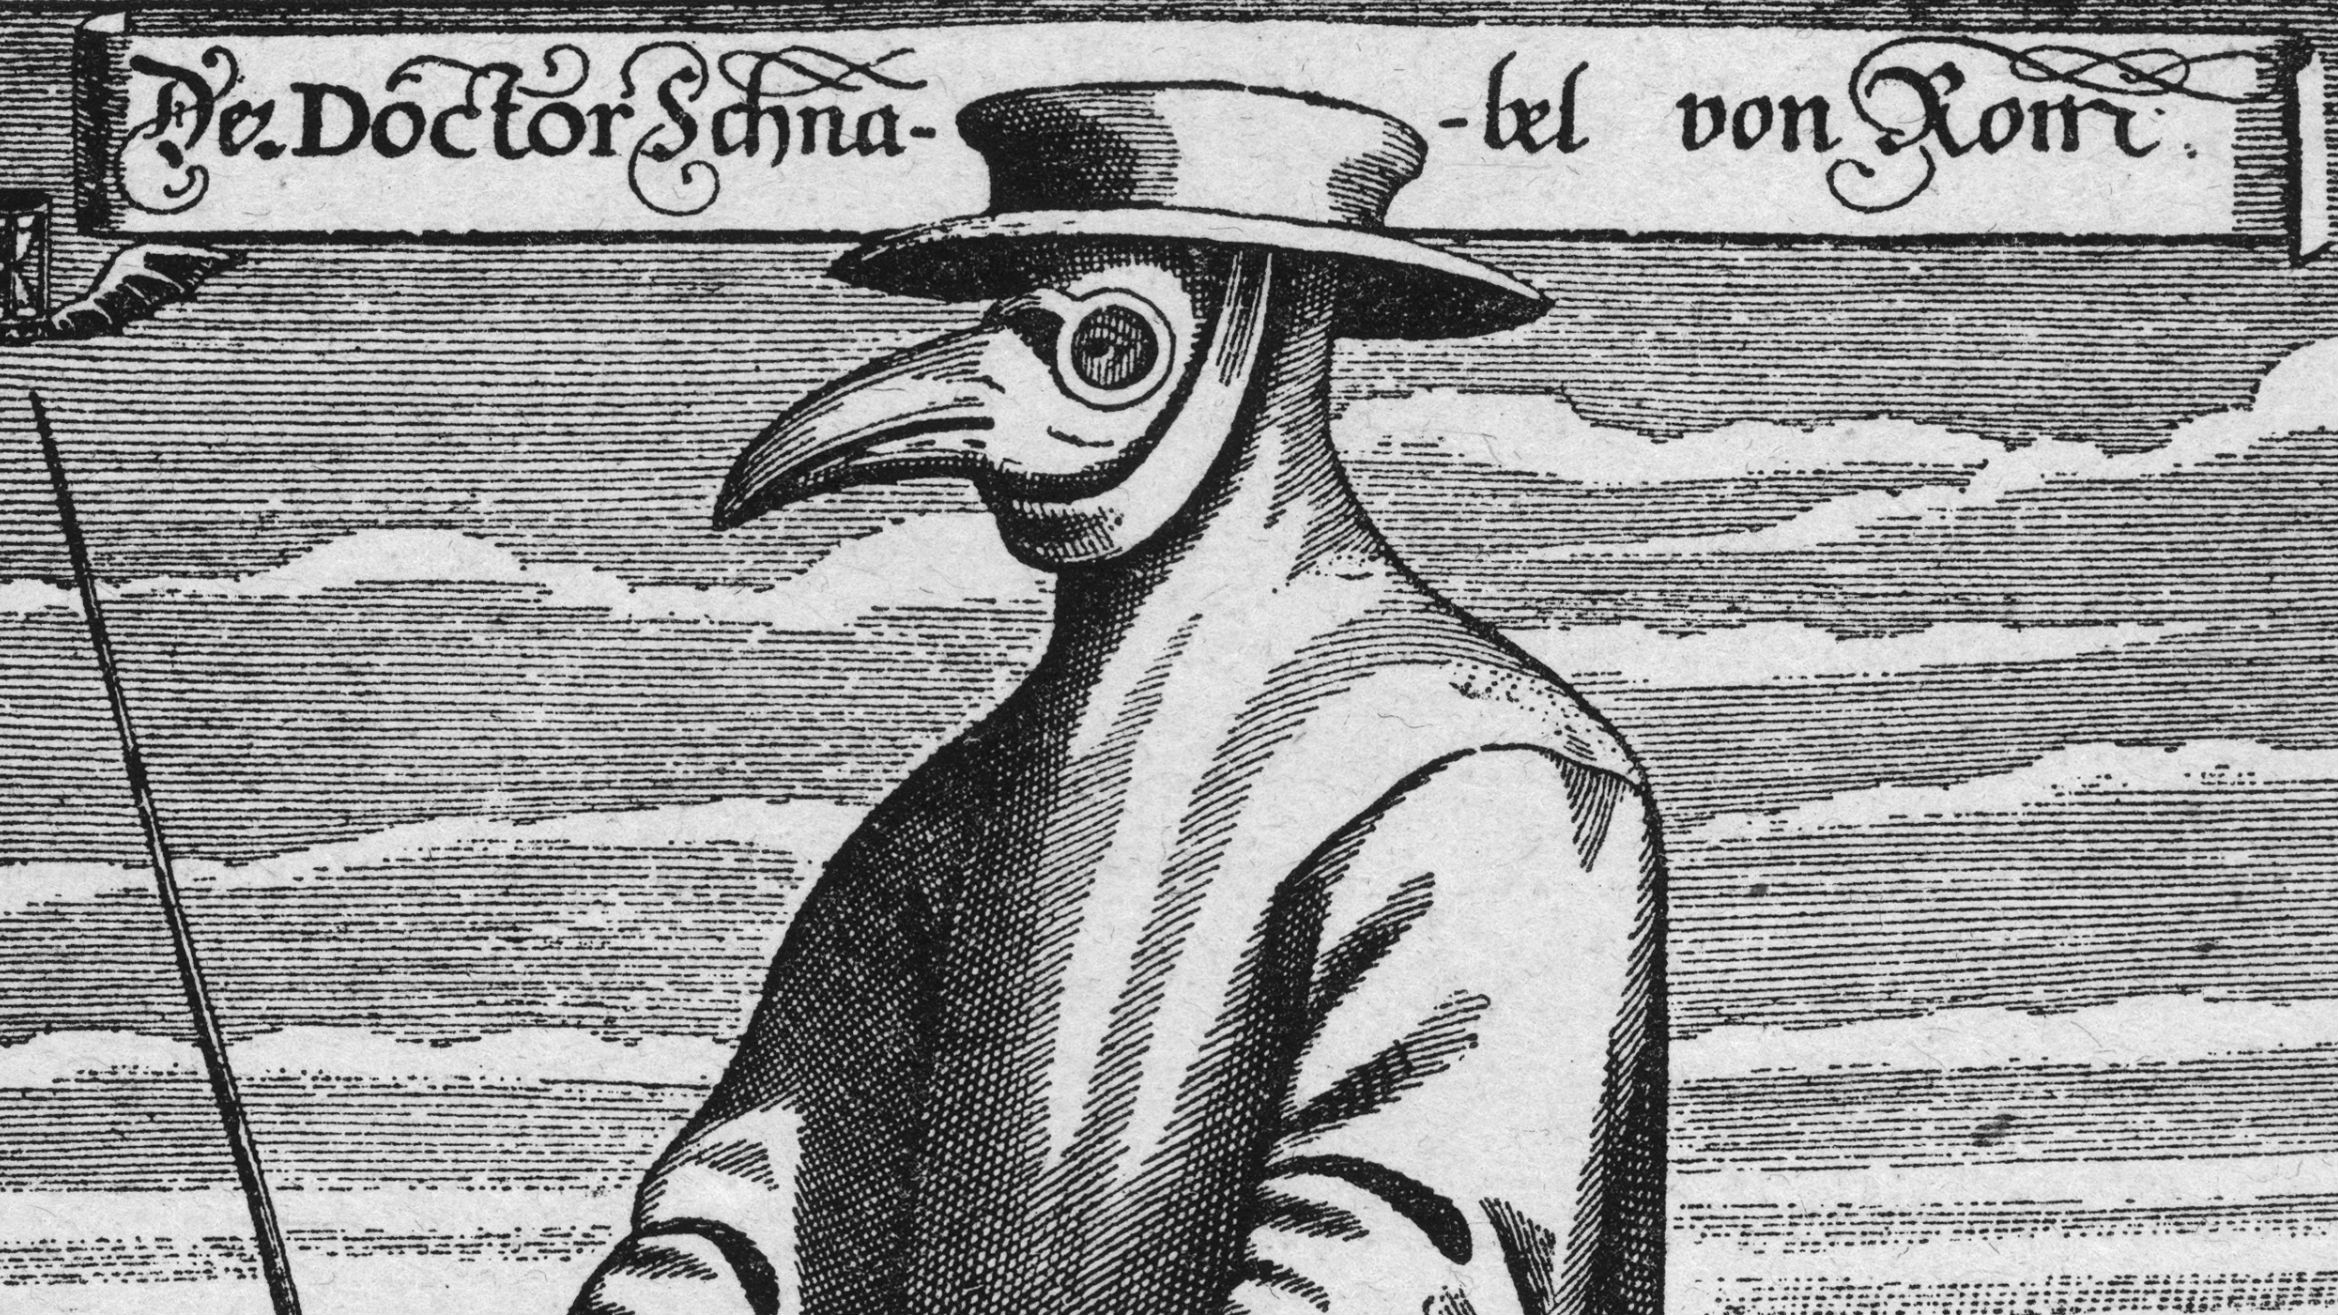 A plague doctor